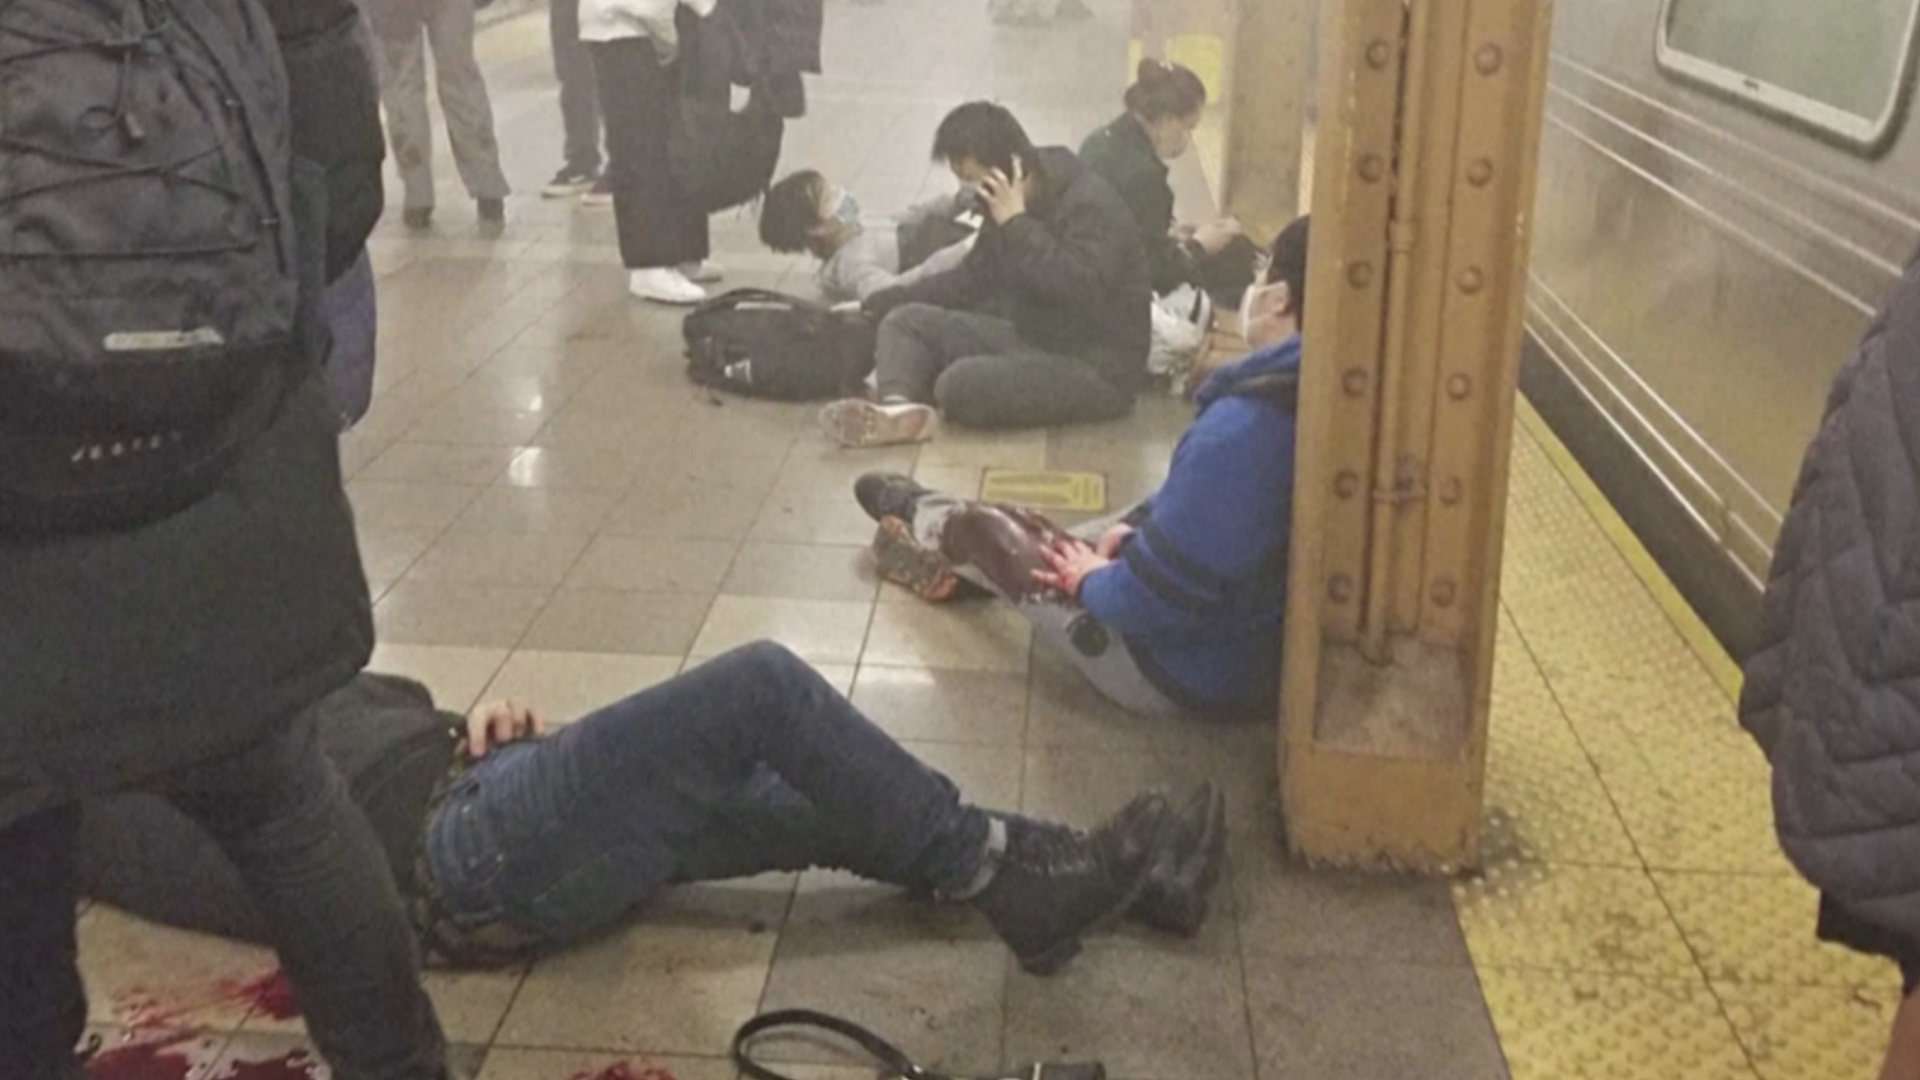 Человека, который открыл огонь в метро Нью-Йорка, до сих пор ищут